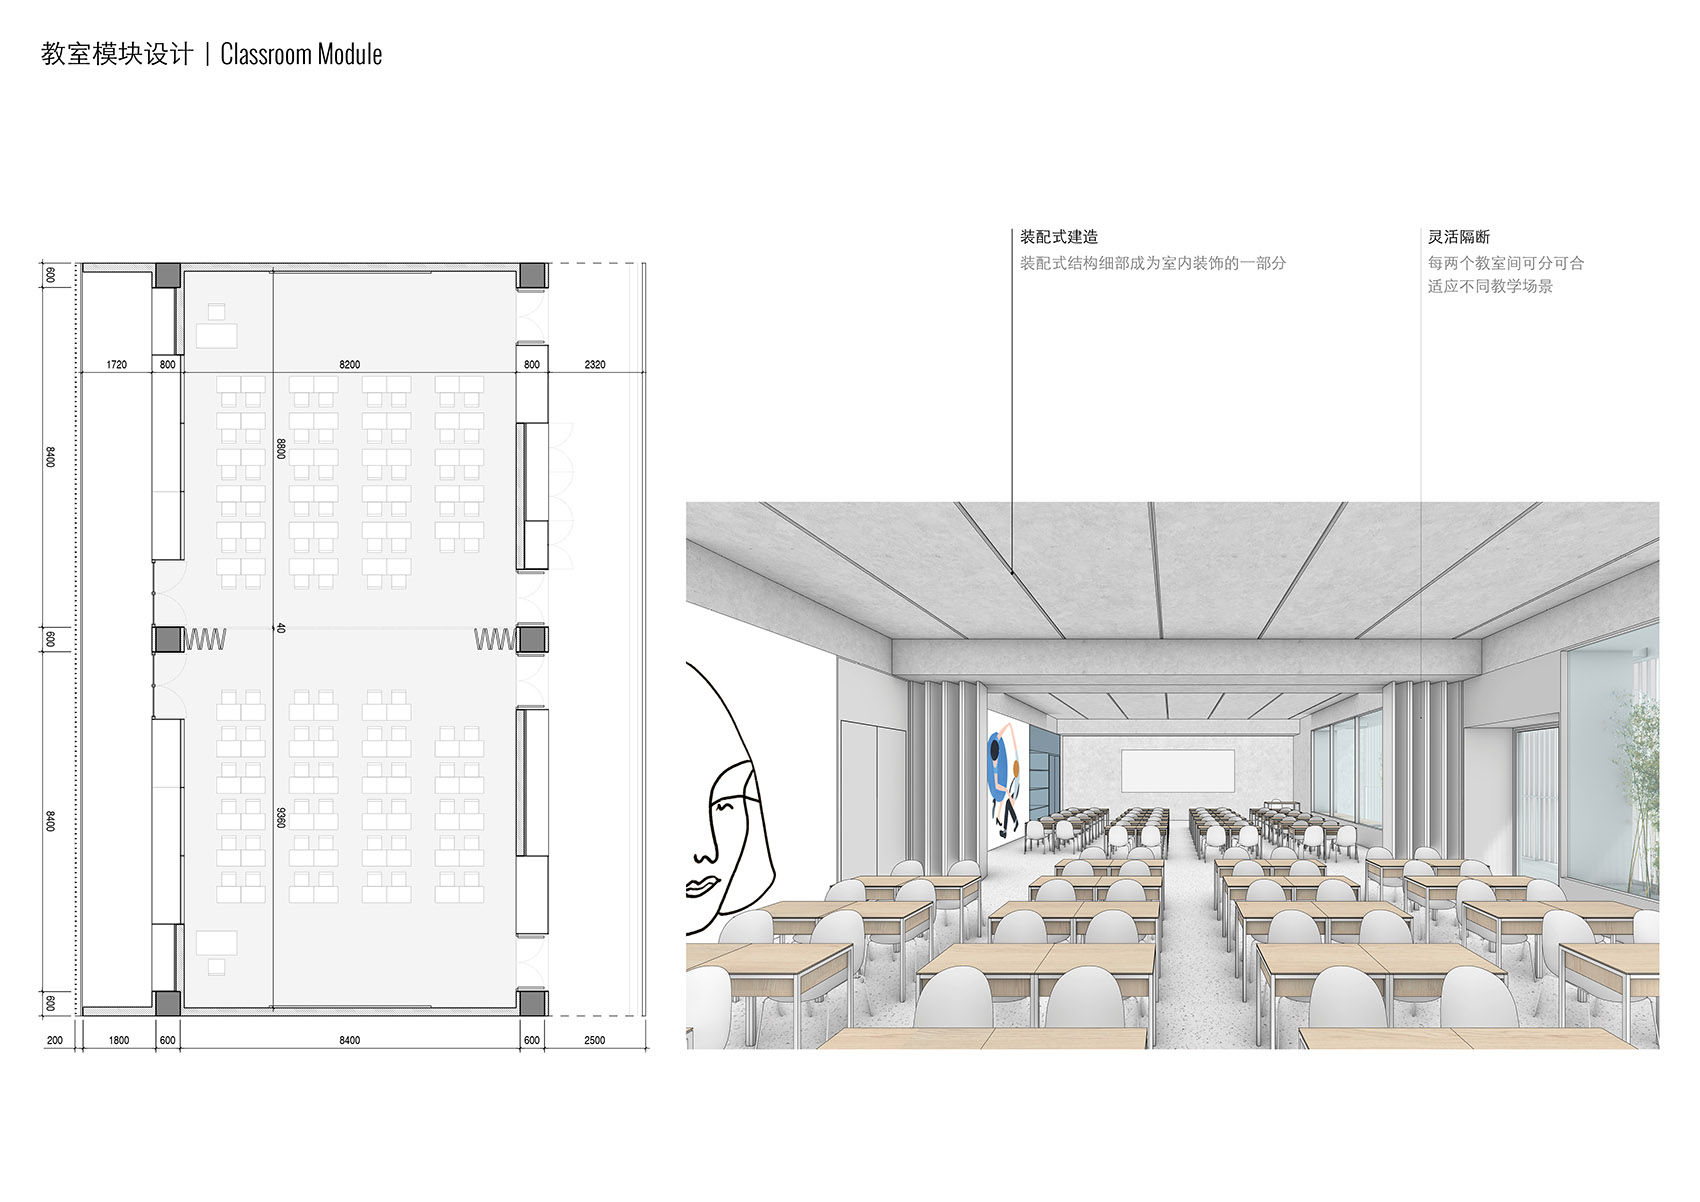 重叠校园：莲花小学校园设计，深圳/高密度垂直分区式校园-84